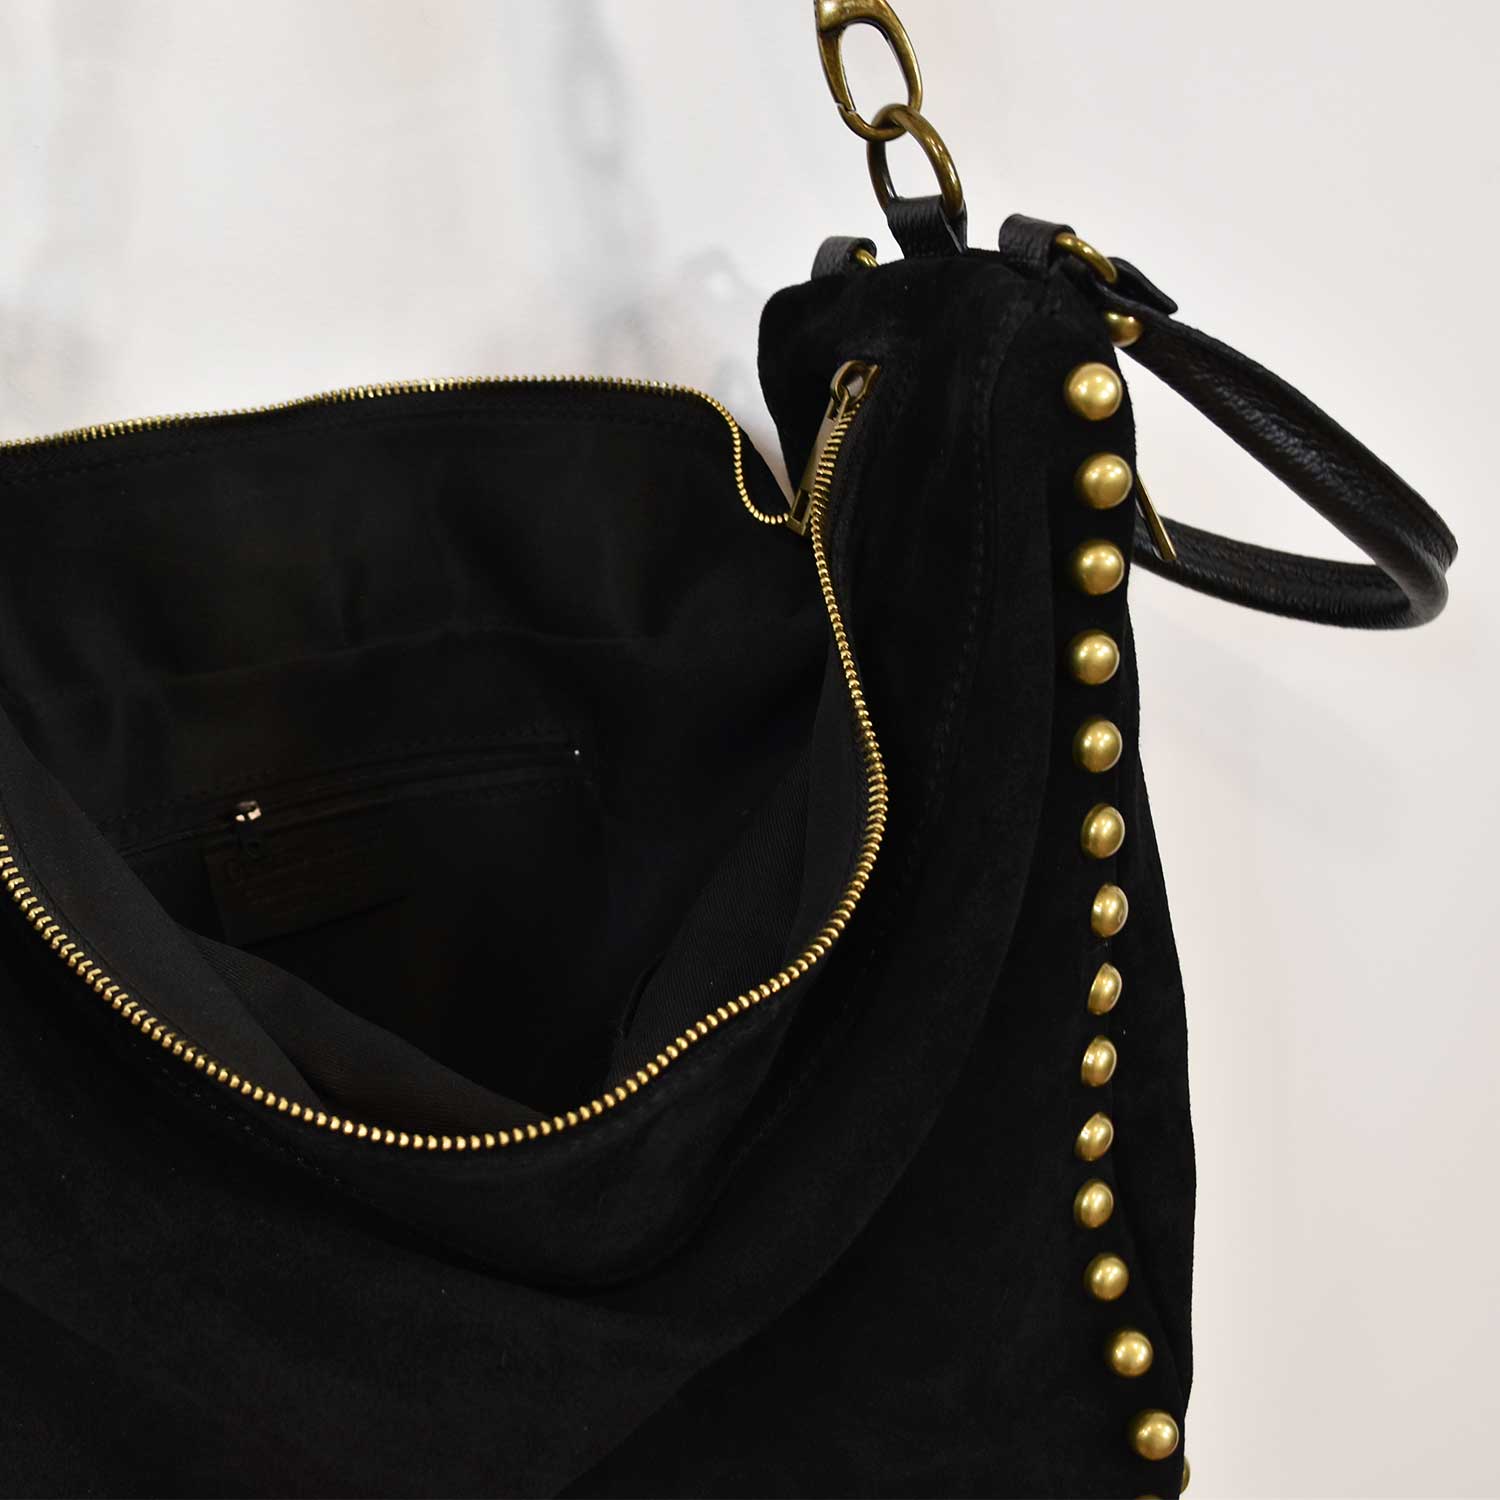 Black Studded leather bag